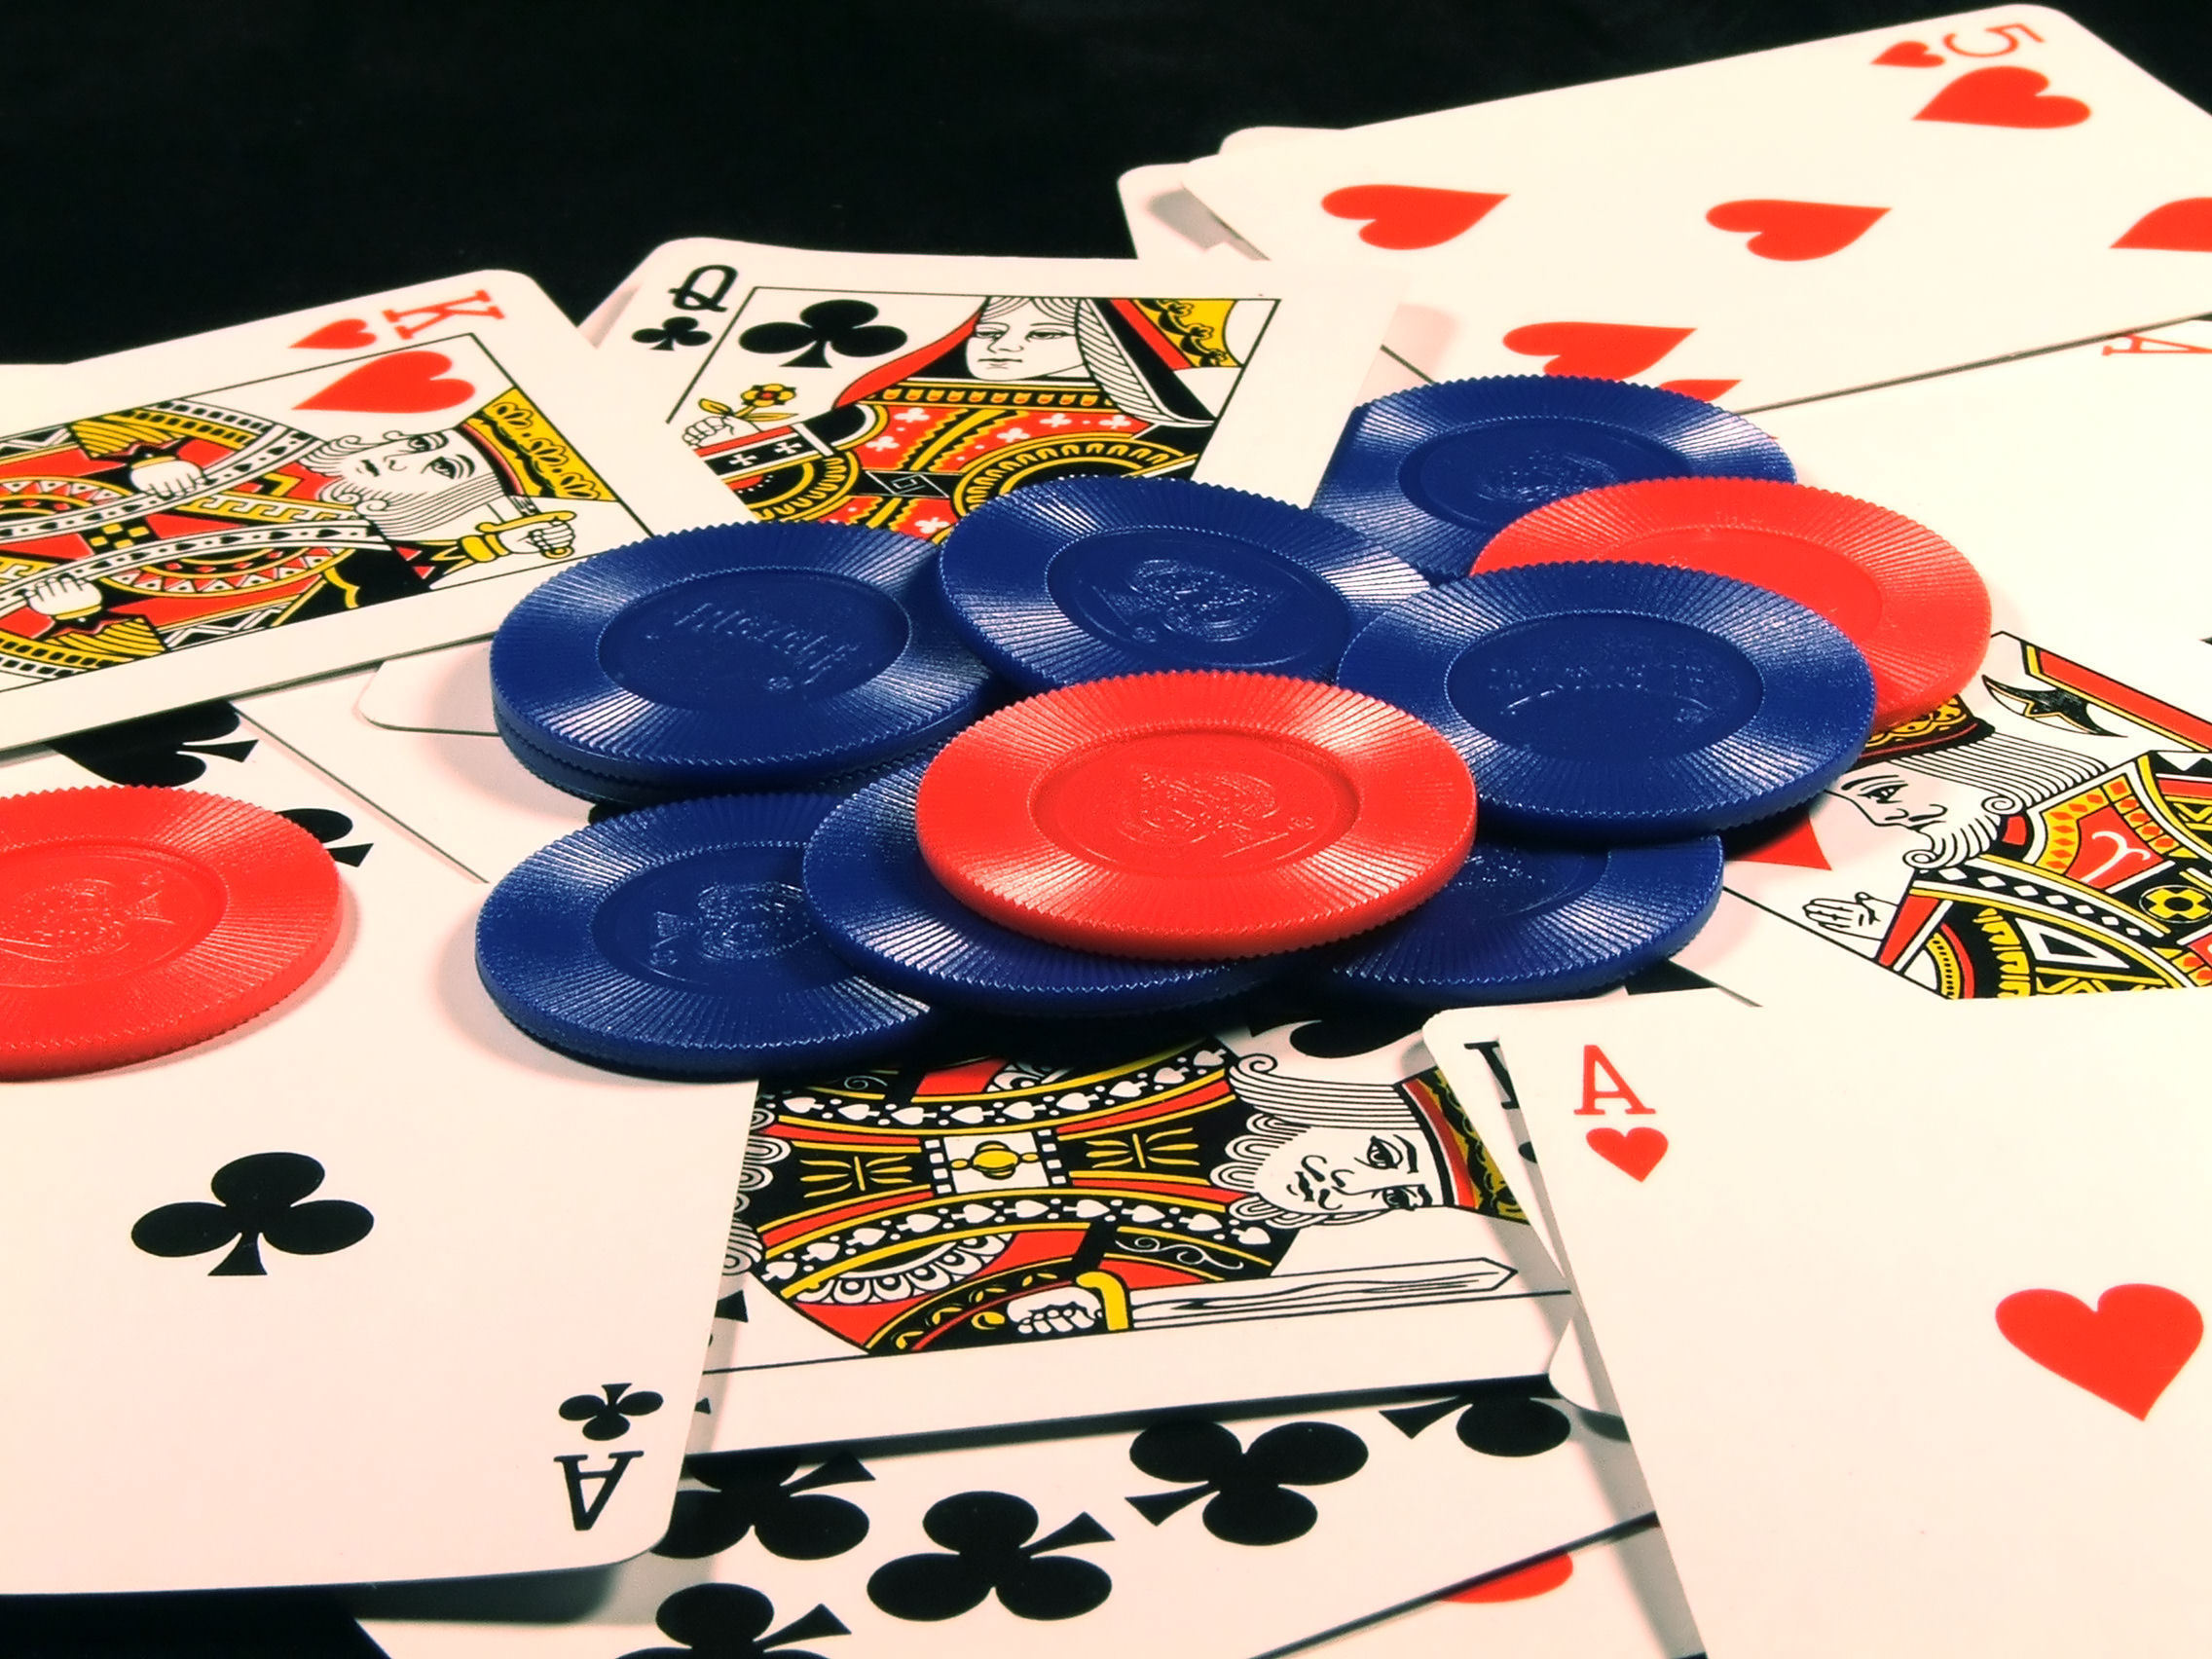 combinações de cartas no poker